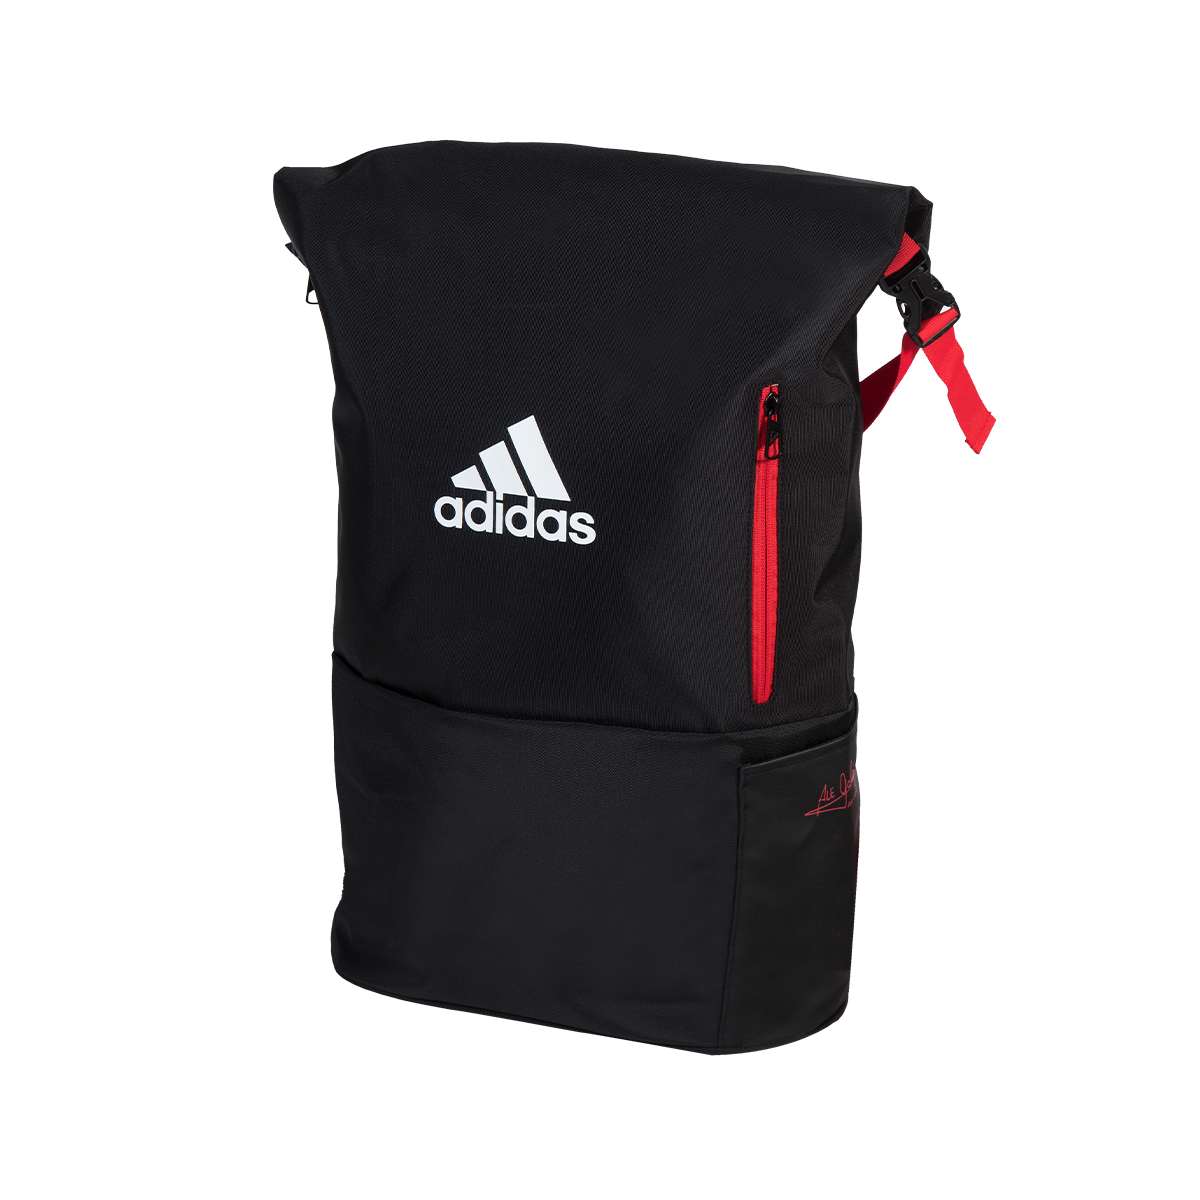 hovedlandet Og Perfekt ADIDAS Backpack MULTIGAME RED/BLACK - All For Padel